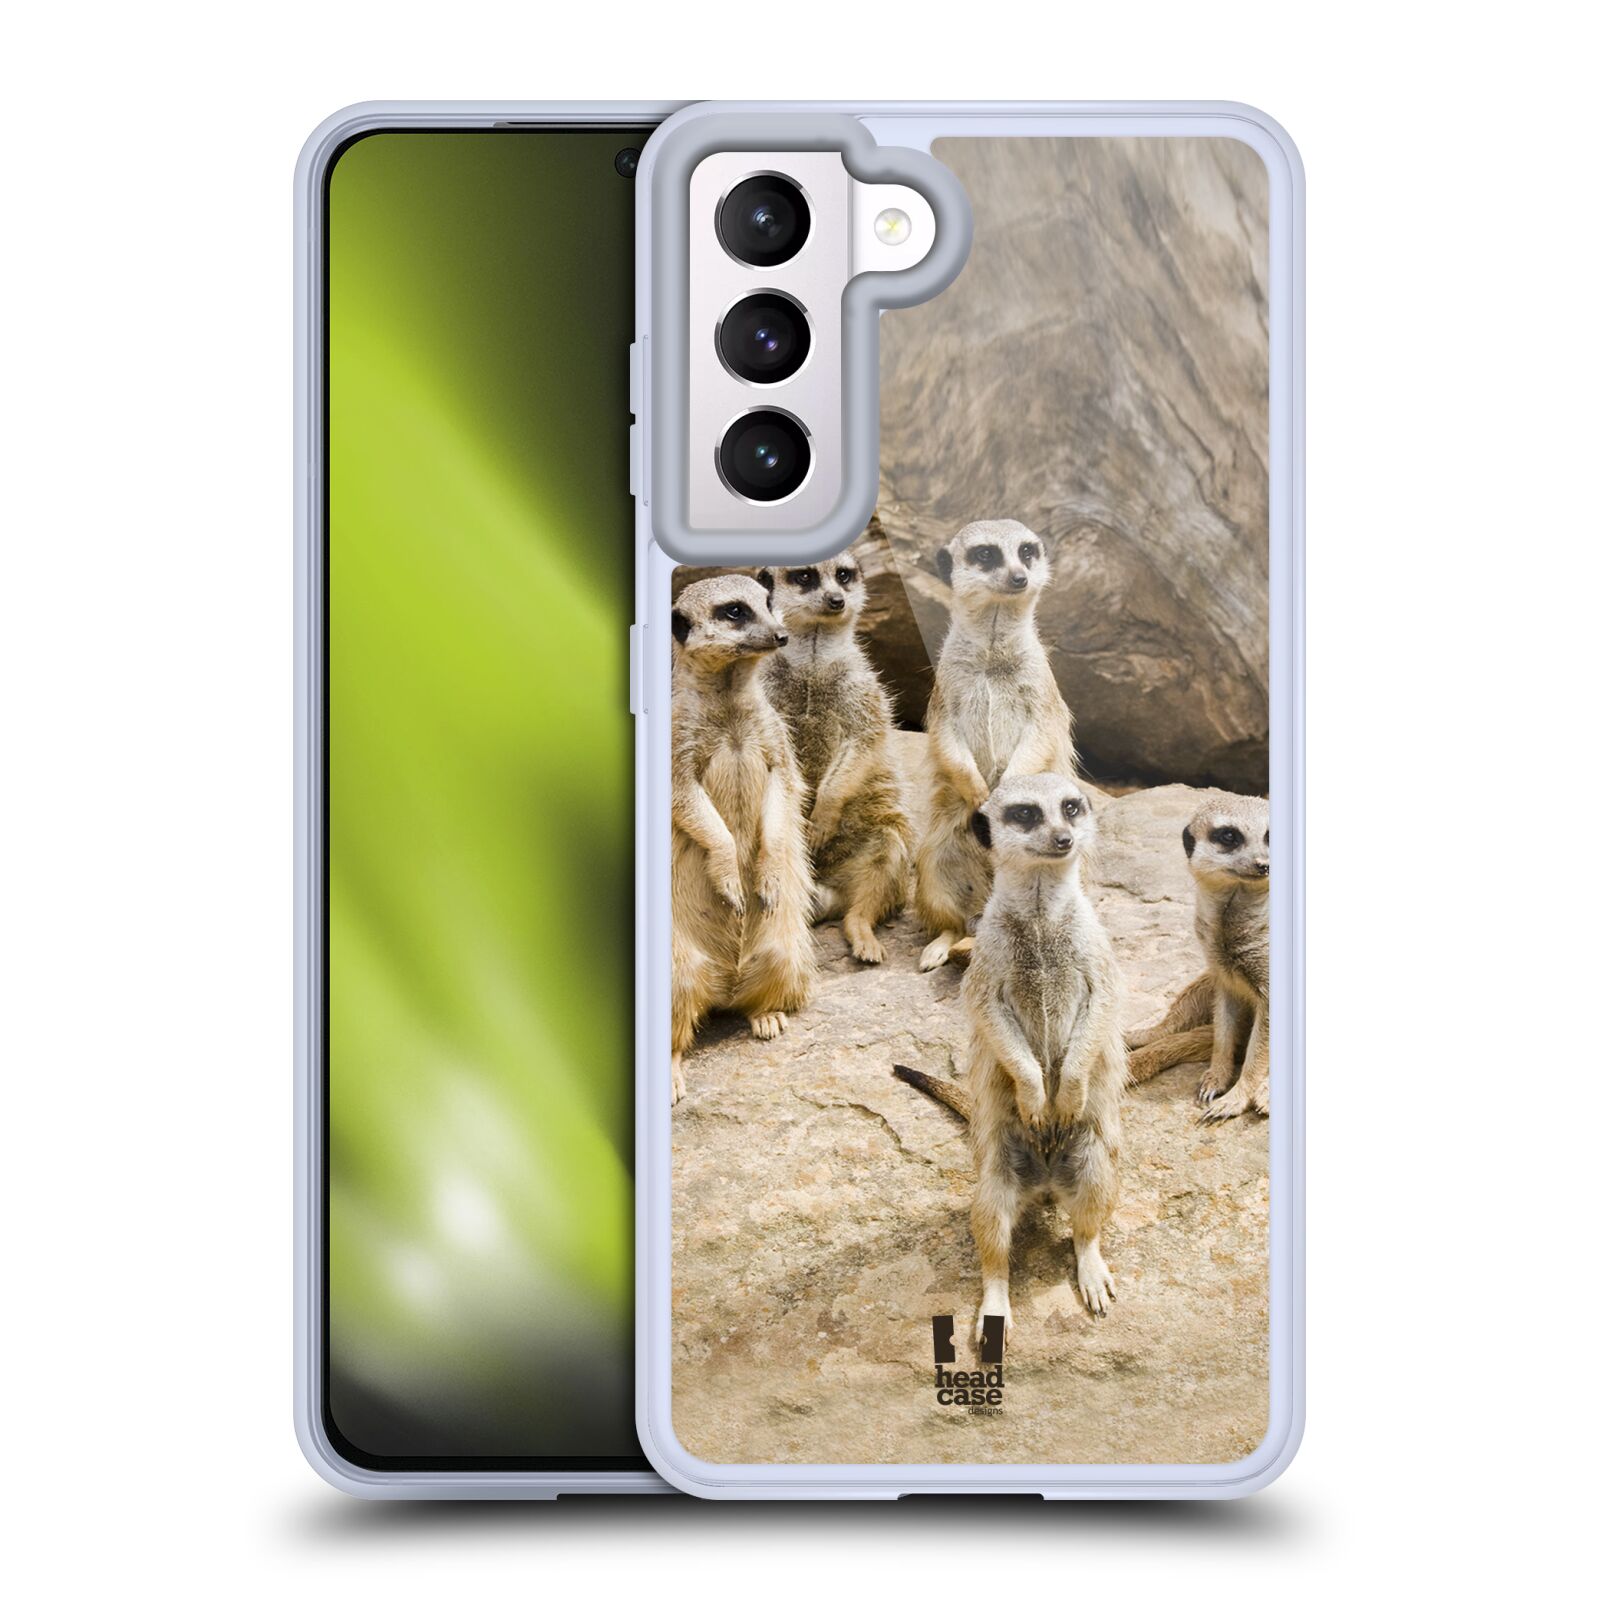 Plastový obal HEAD CASE na mobil Samsung Galaxy S21 5G vzor Divočina, Divoký život a zvířata foto SURIKATA